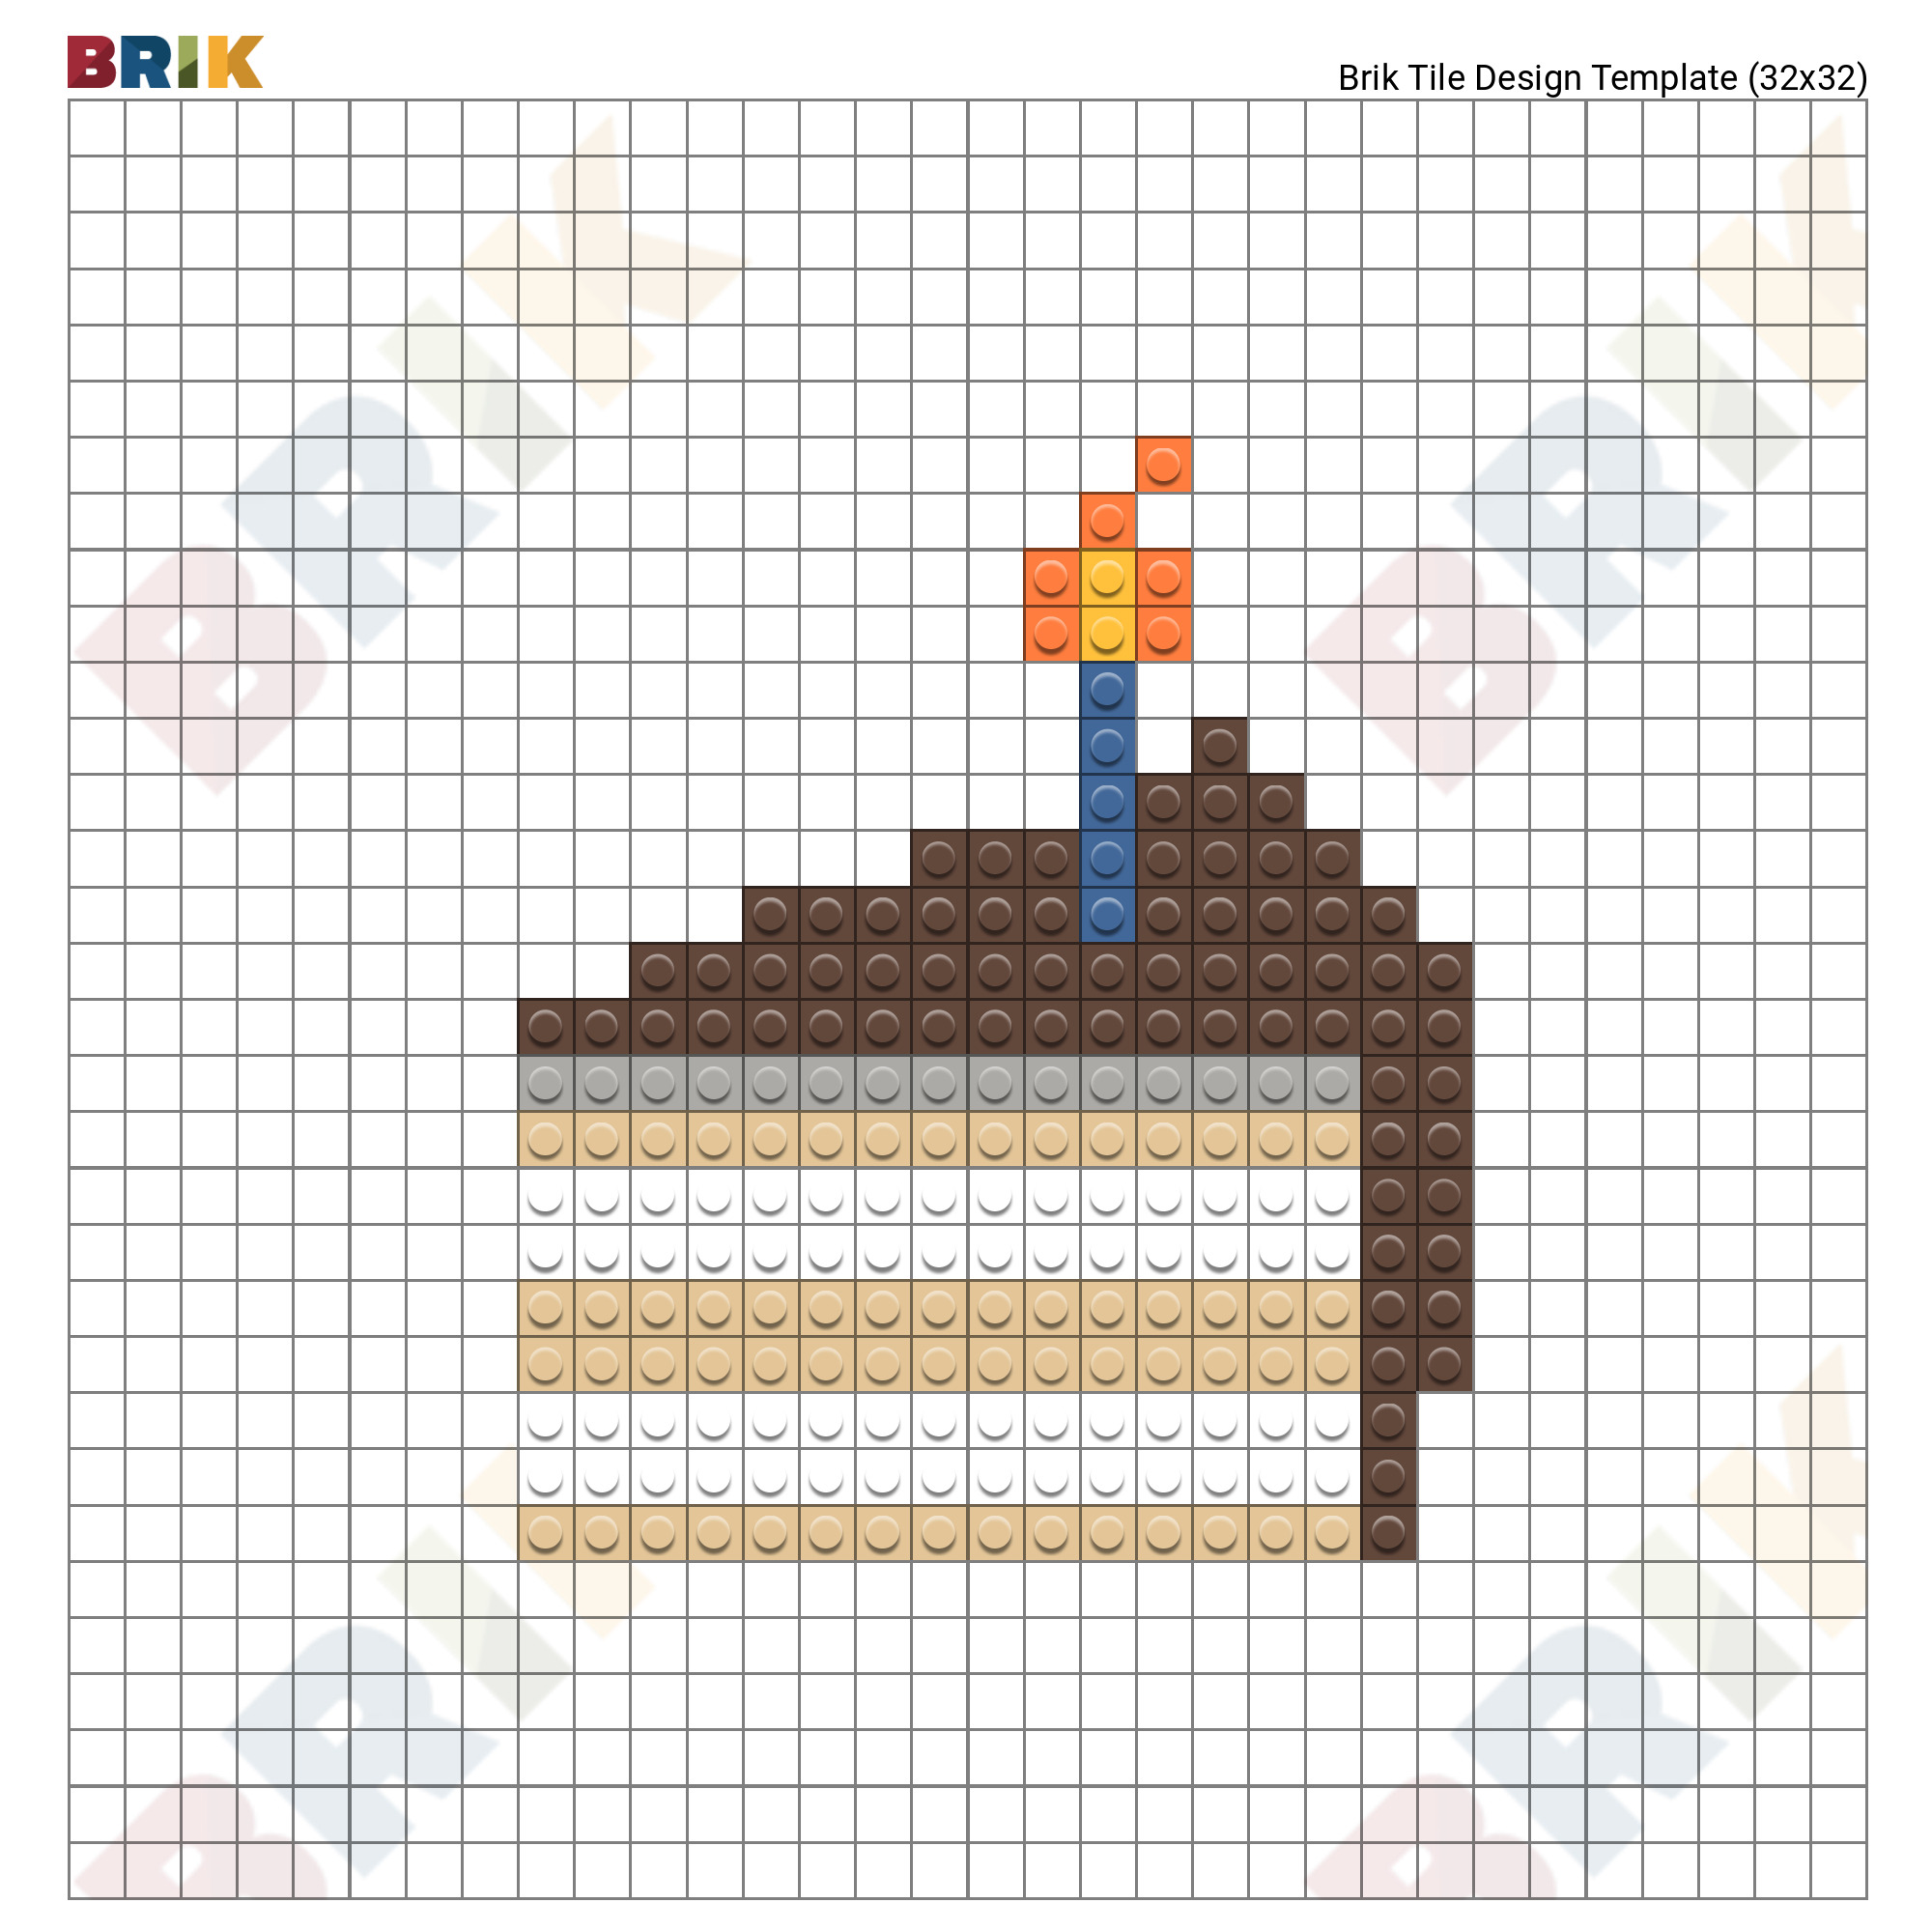 Pixel Cake Images - Free Download on Freepik